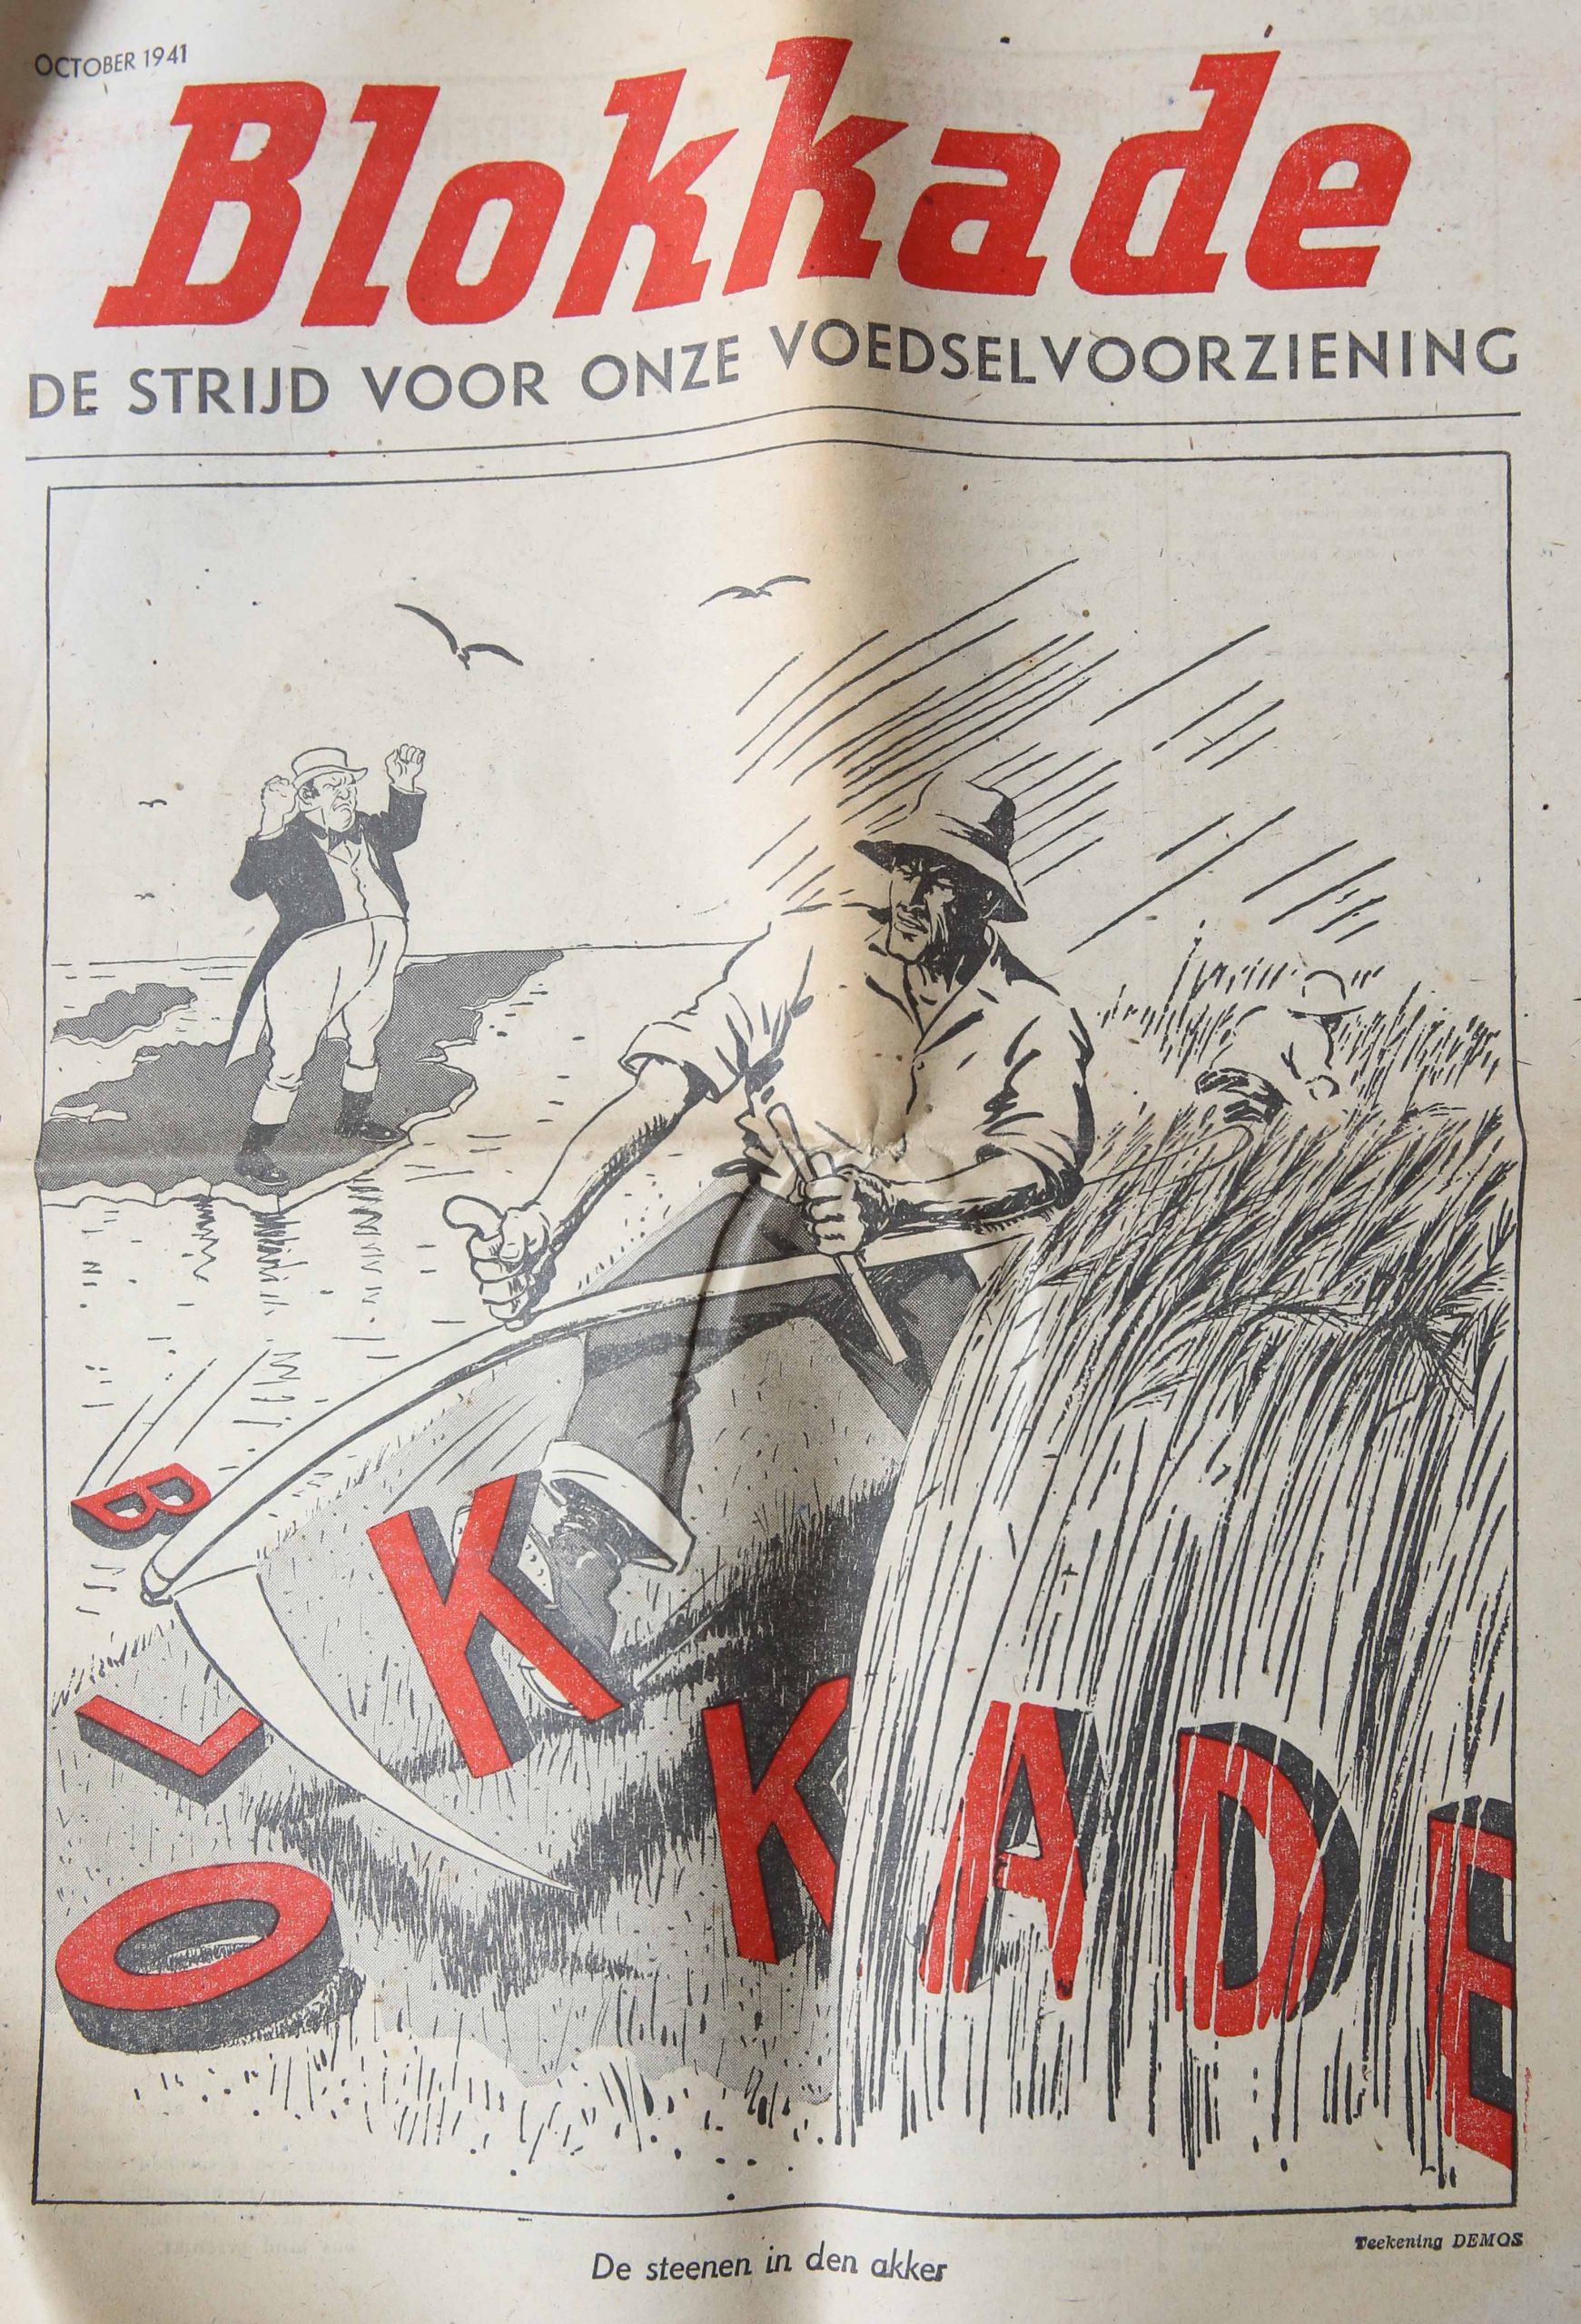 Blokkade october 1941, newspaper, October 1941, De Strijd voor onze voedselvoorziening, De steenen in de akker, Teekening Demos, 12 pp. Gevouwen.